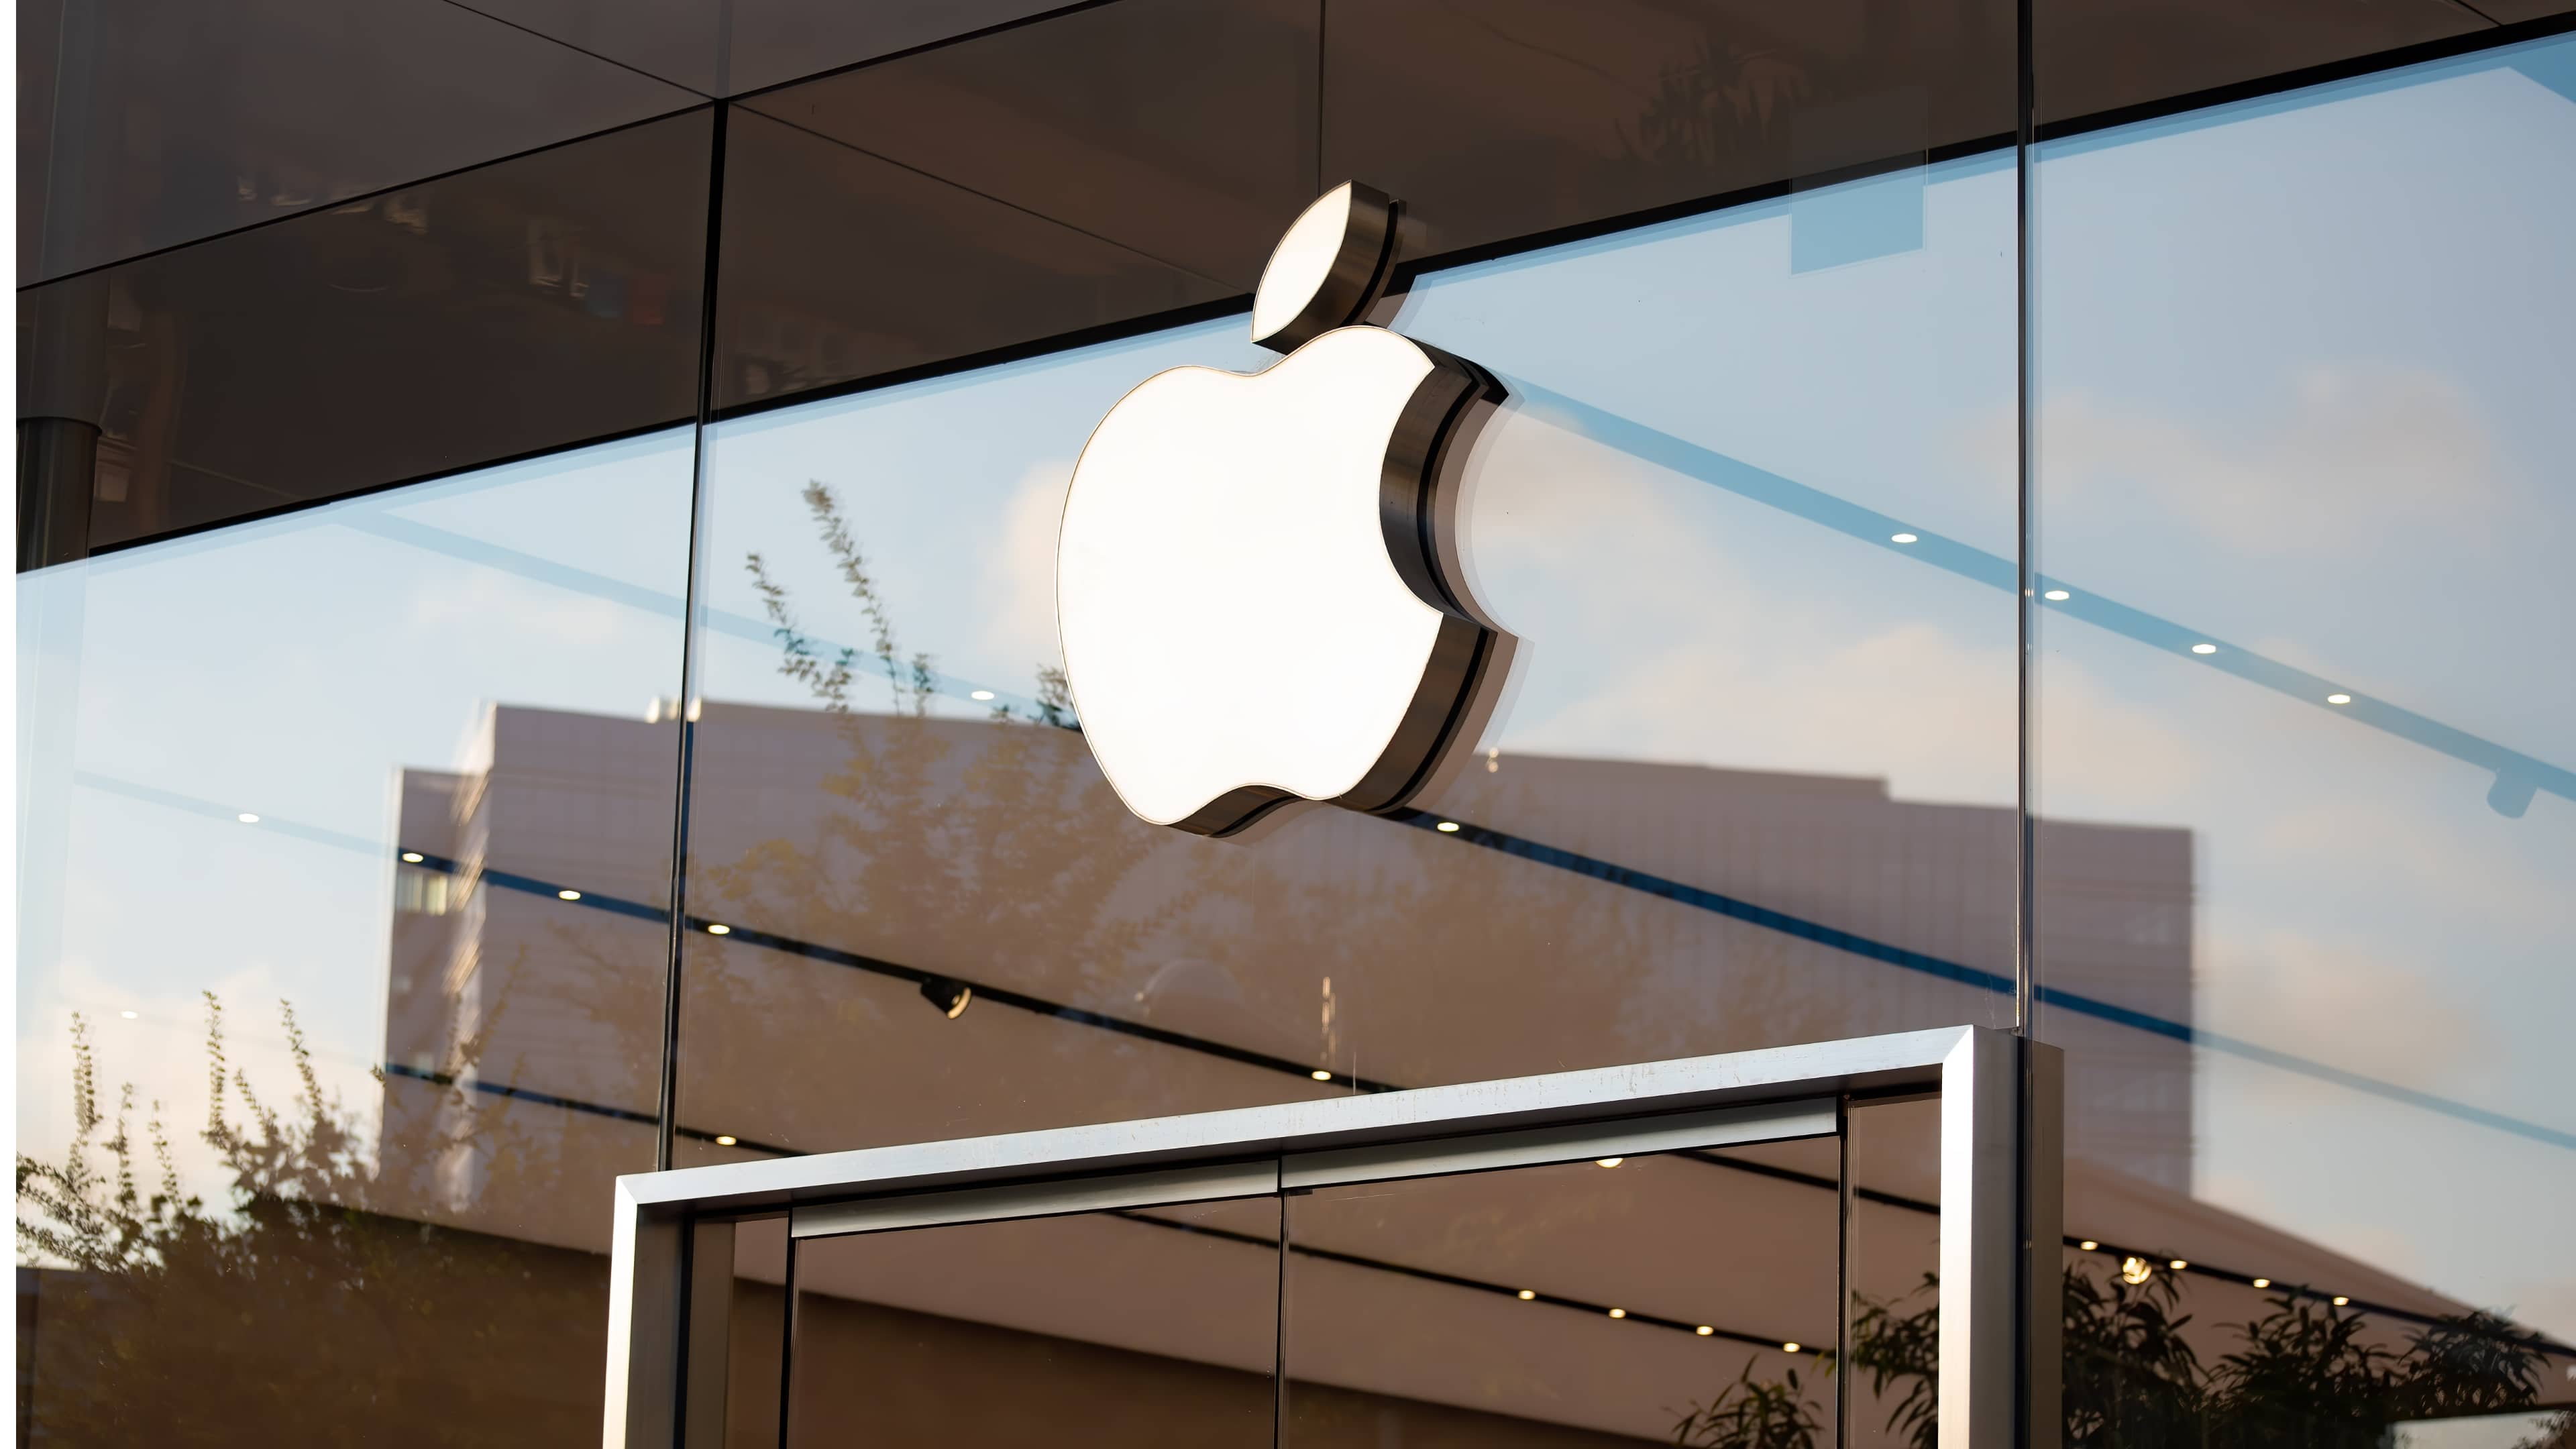 Tampilan dekat logo Apple di atas pintu masuk toko kaca Apple